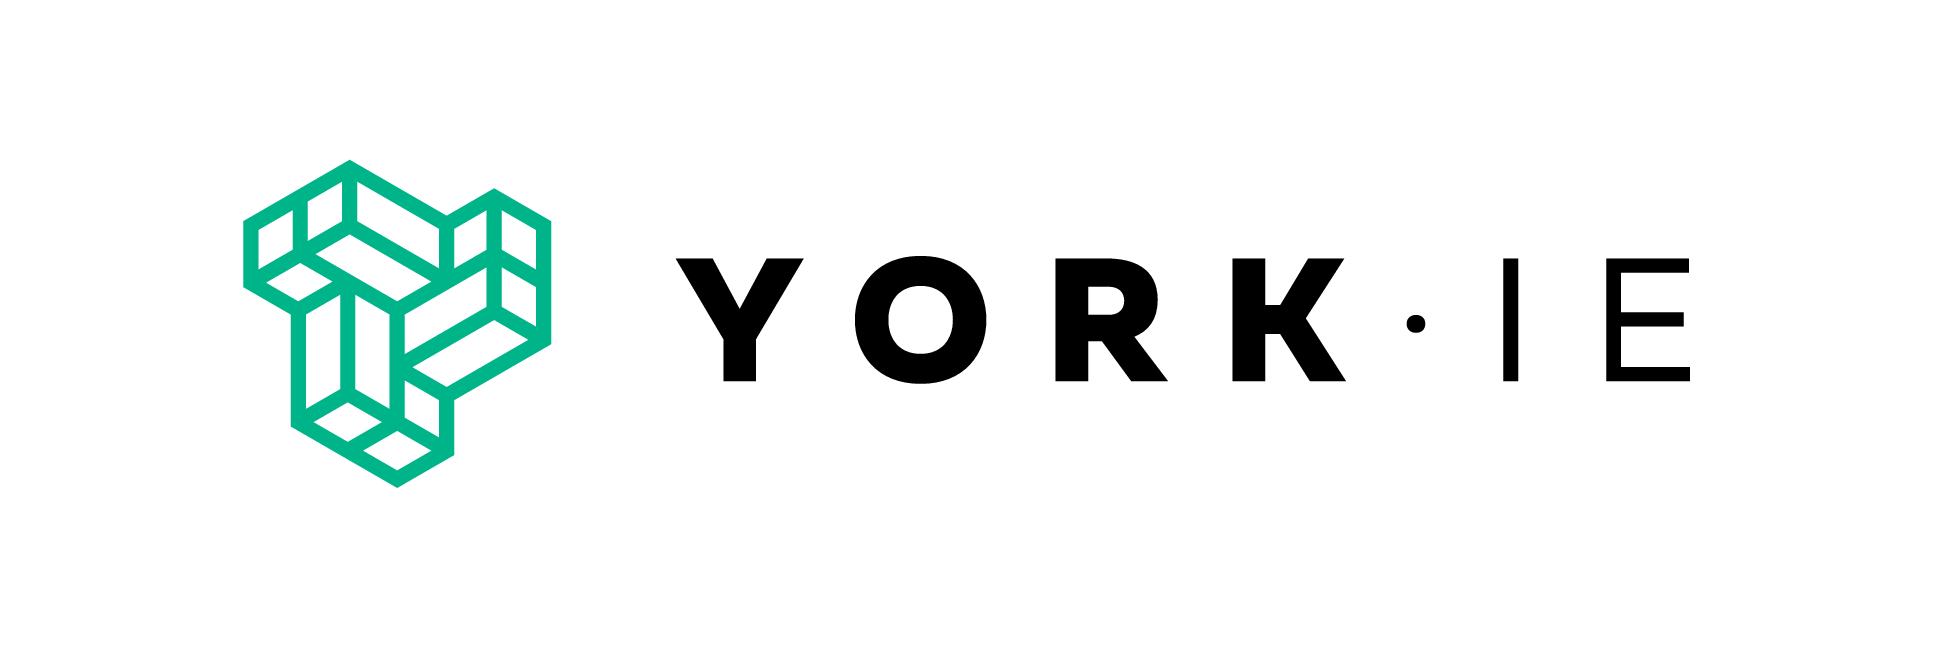 York IE